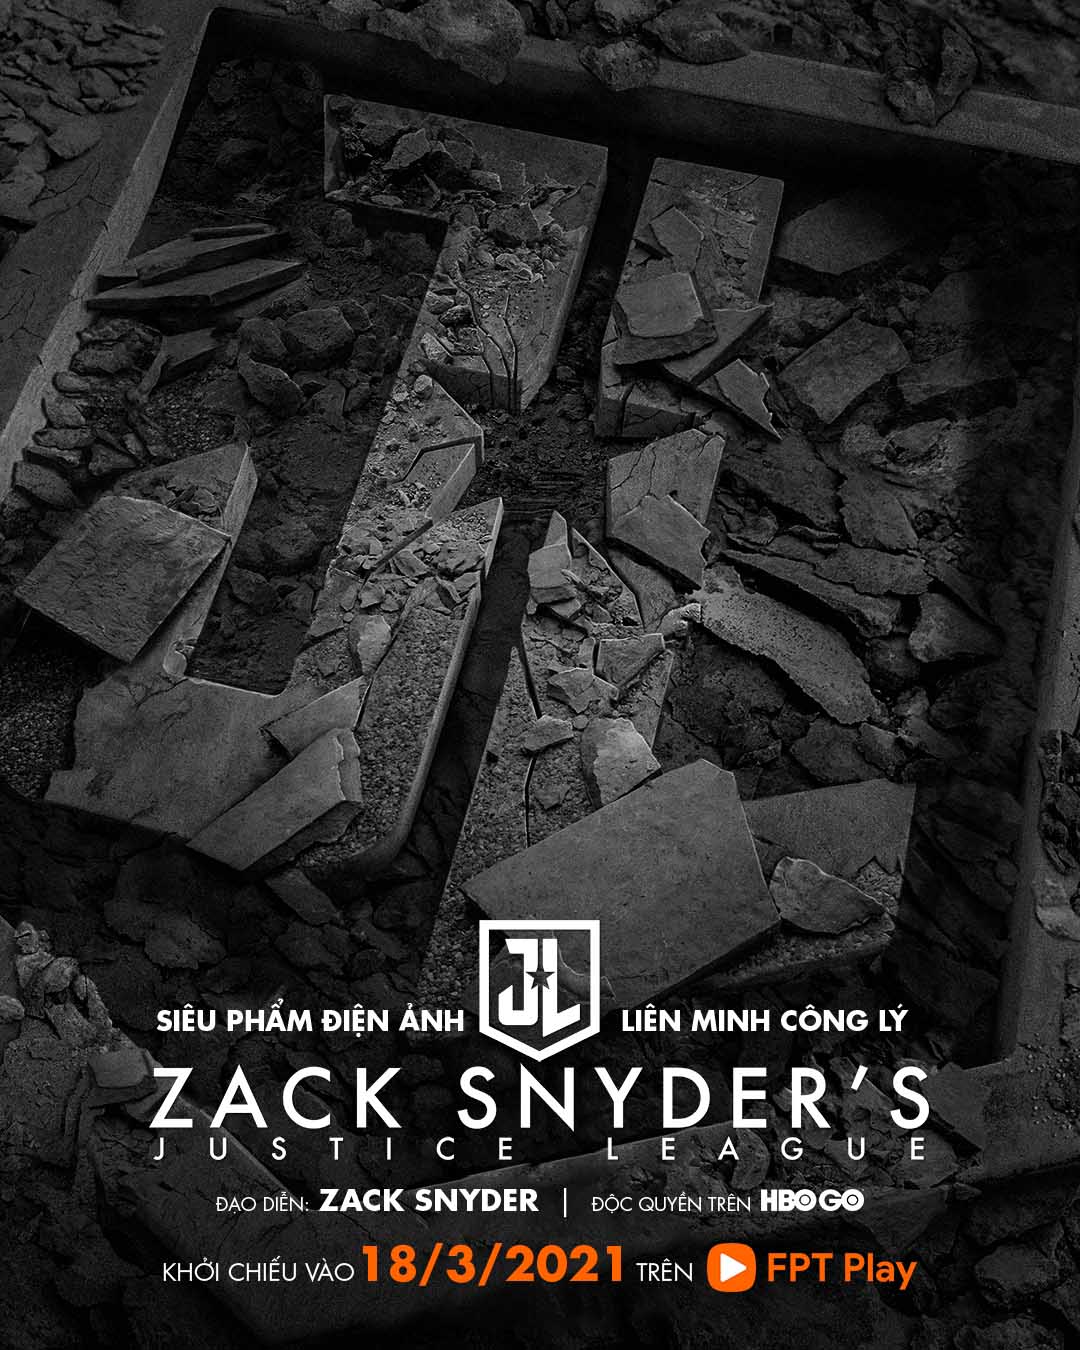 Liên Minh Công Lý Của Zack Snyder độc Quyền Hbo Go Trên Fpt Play 